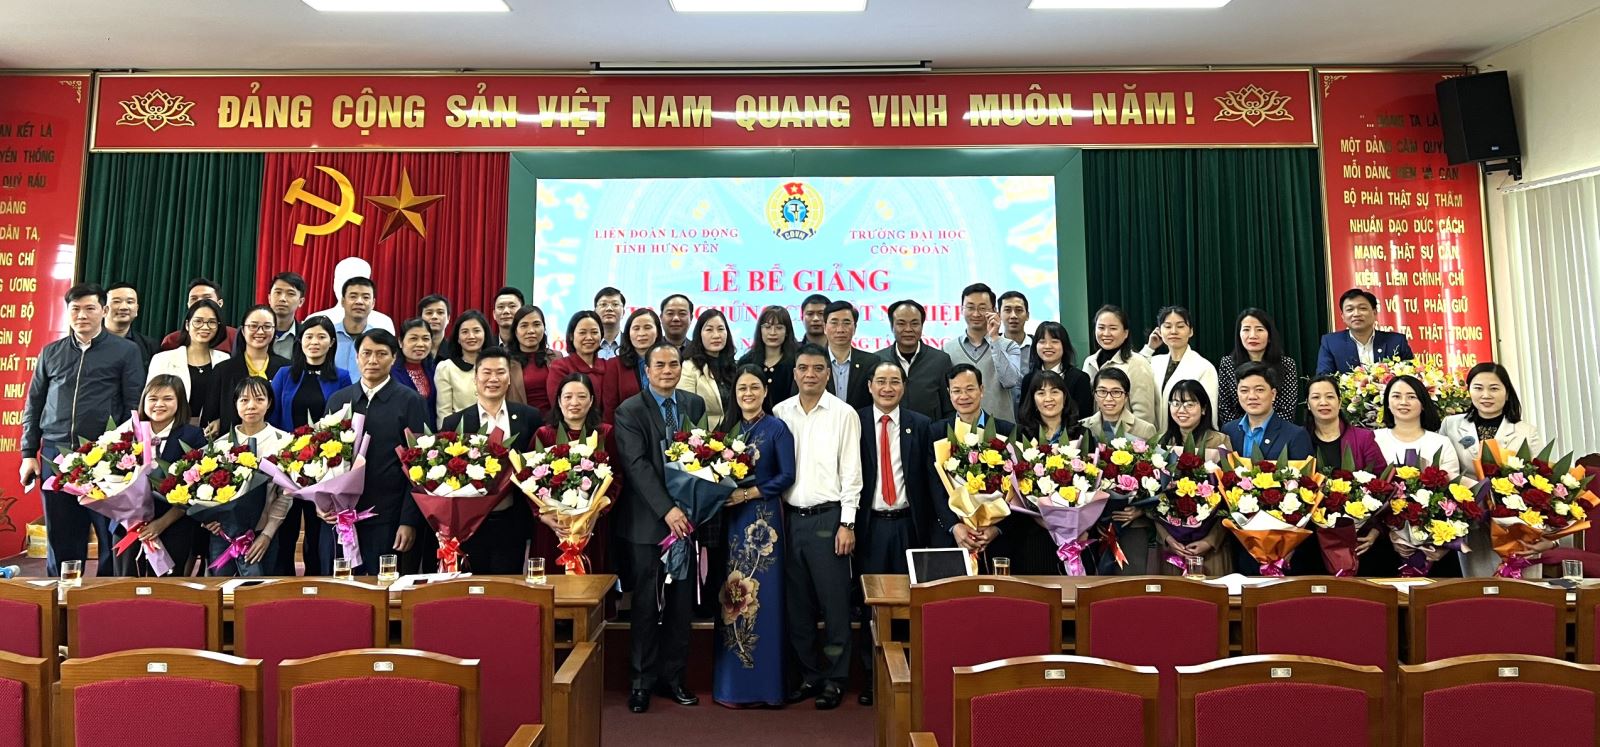 Bế giảng lớp đào tạo lý luận và nghiệp vụ công tác Công đoàn - K253  cho cán bộ công đoàn tỉnh Hưng Yên